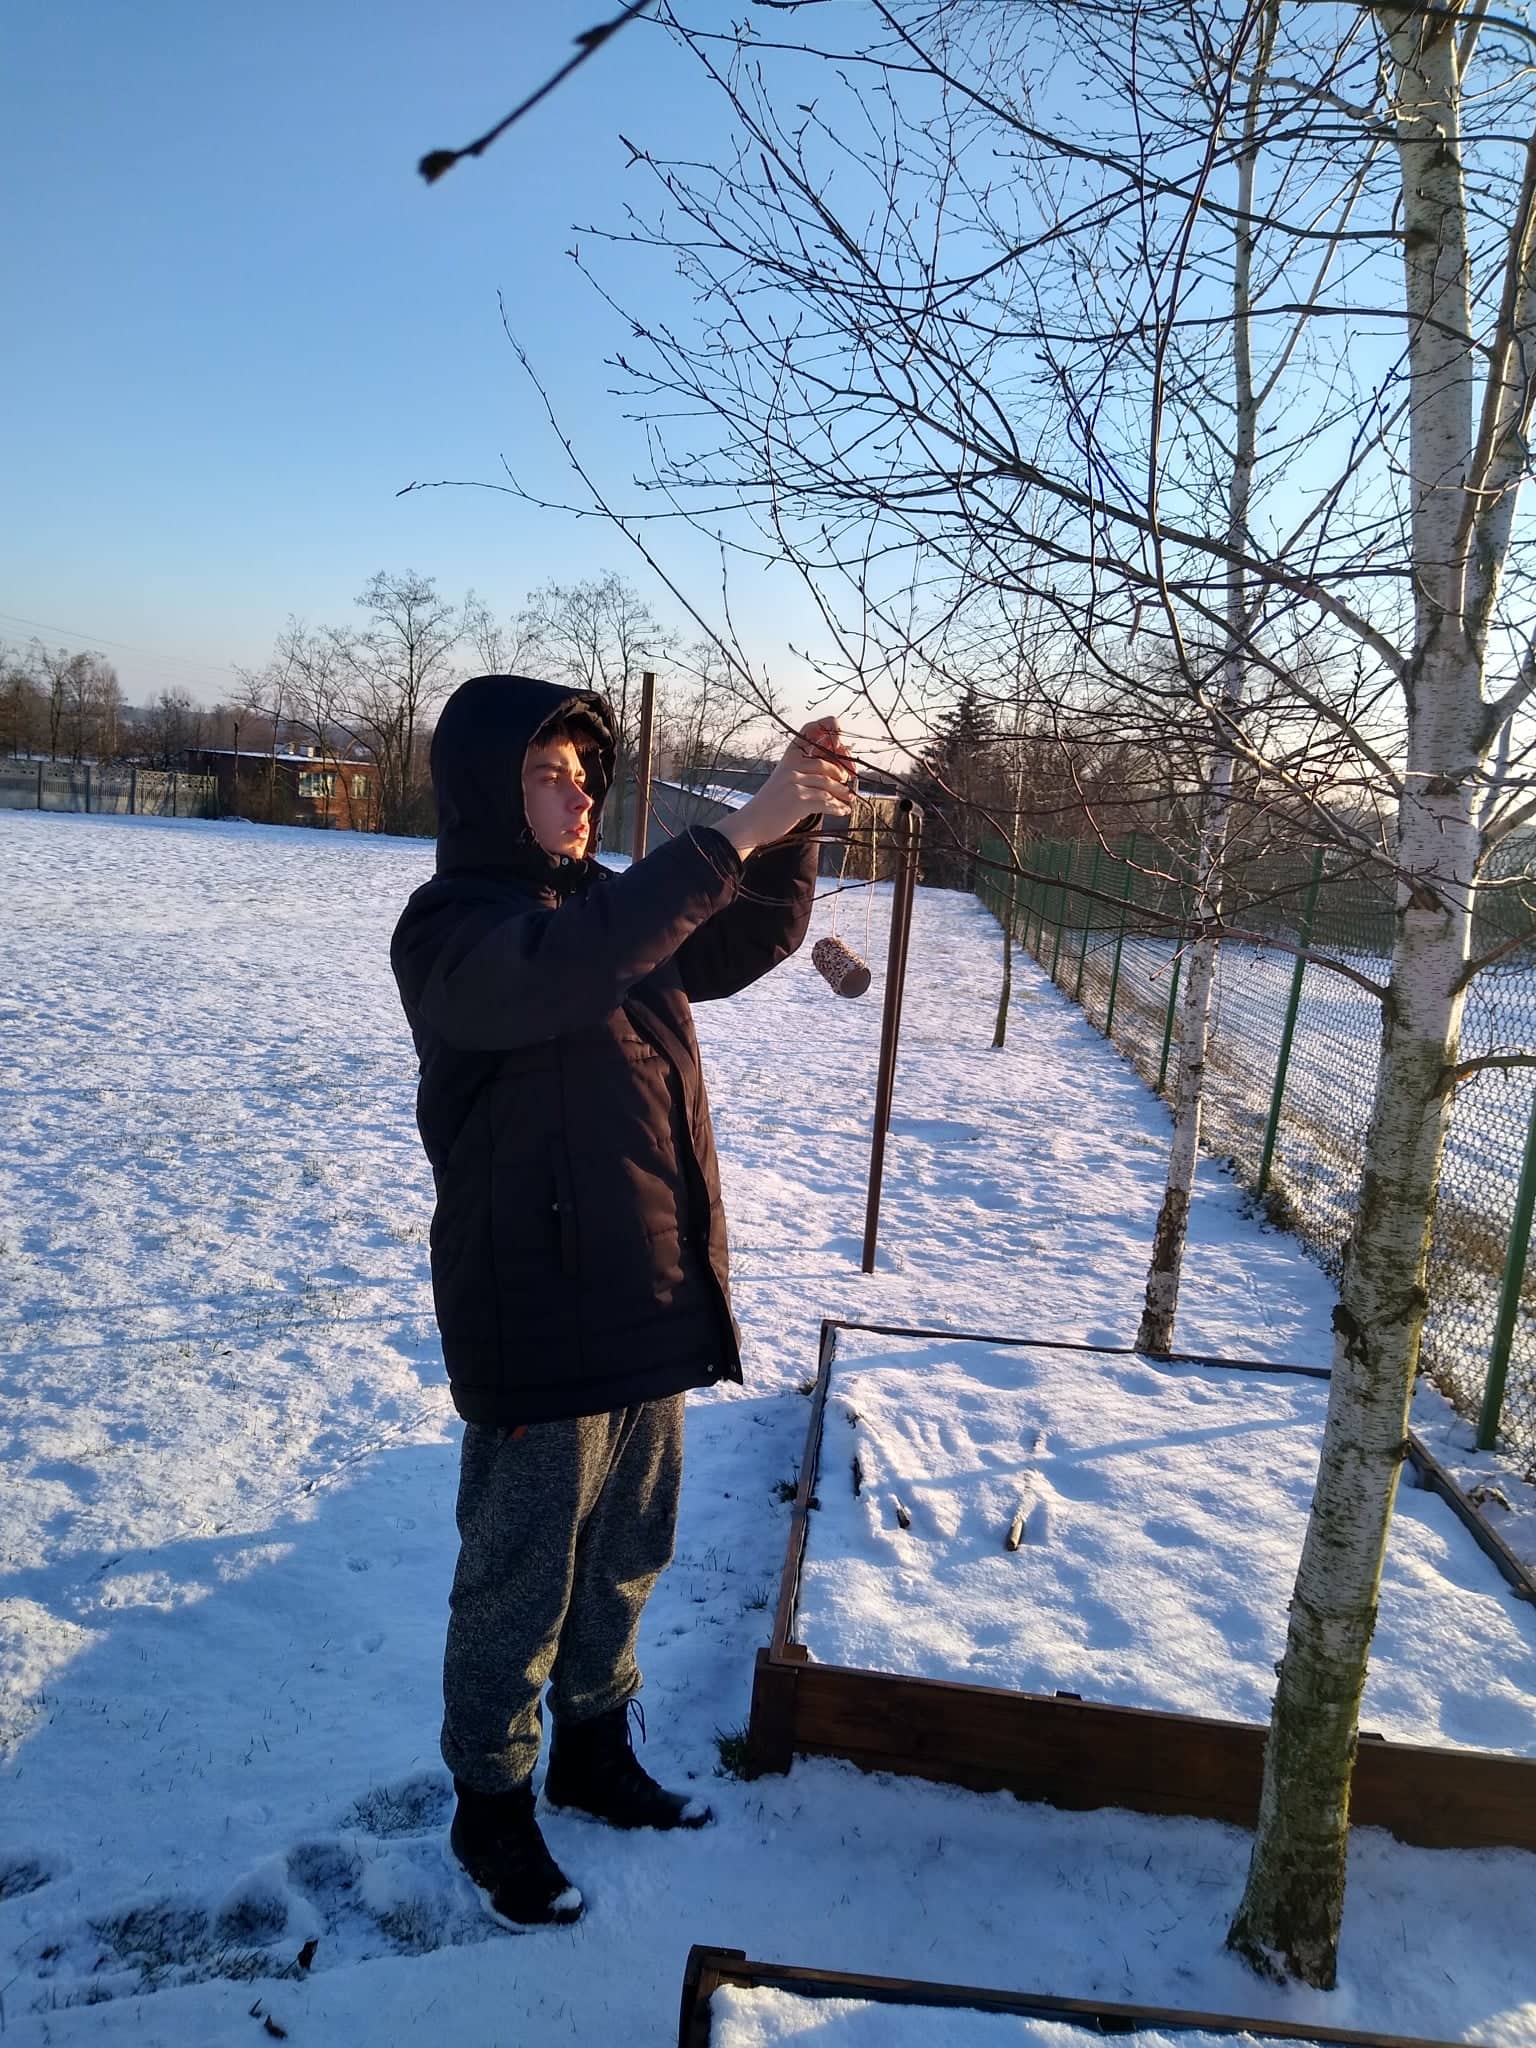 wychowanek wieszający rolkę z ziarnami na drzewie dookoła śnieg